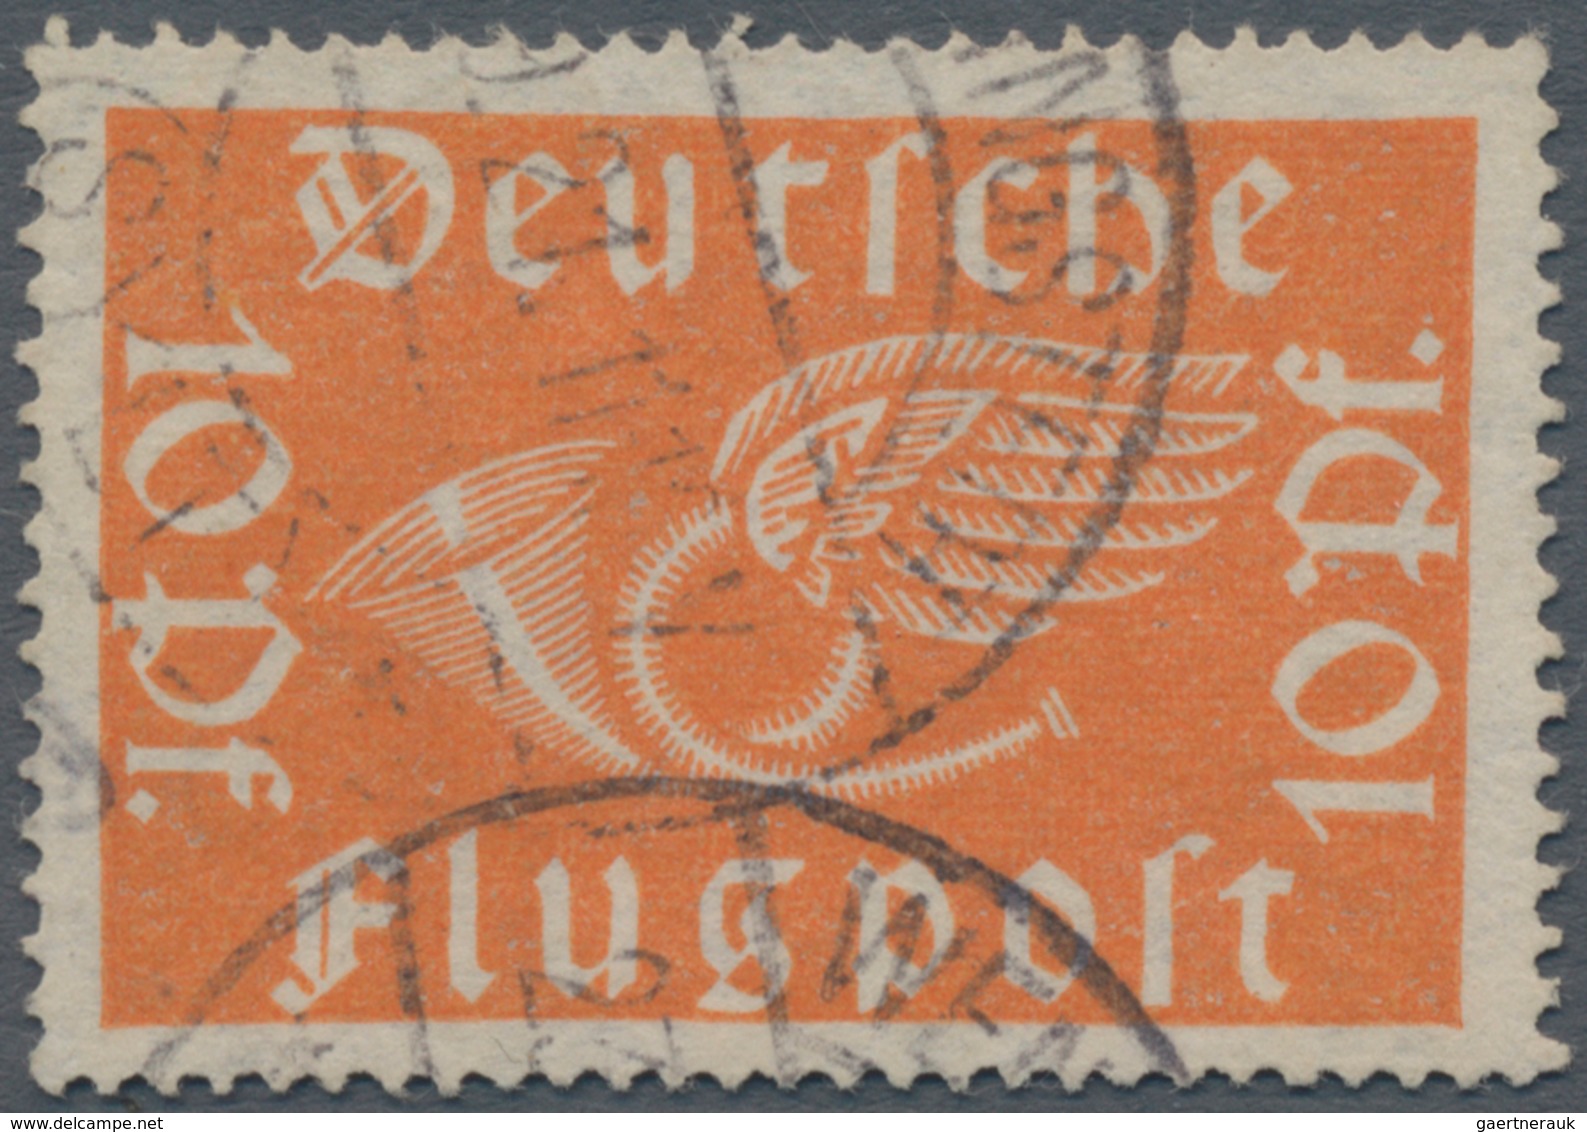 Deutsches Reich - Inflation: 1919, Flugpostmarke 10 Pf Orange Auf Wolkigem, Wasserzeichenähnlichem P - Lettres & Documents